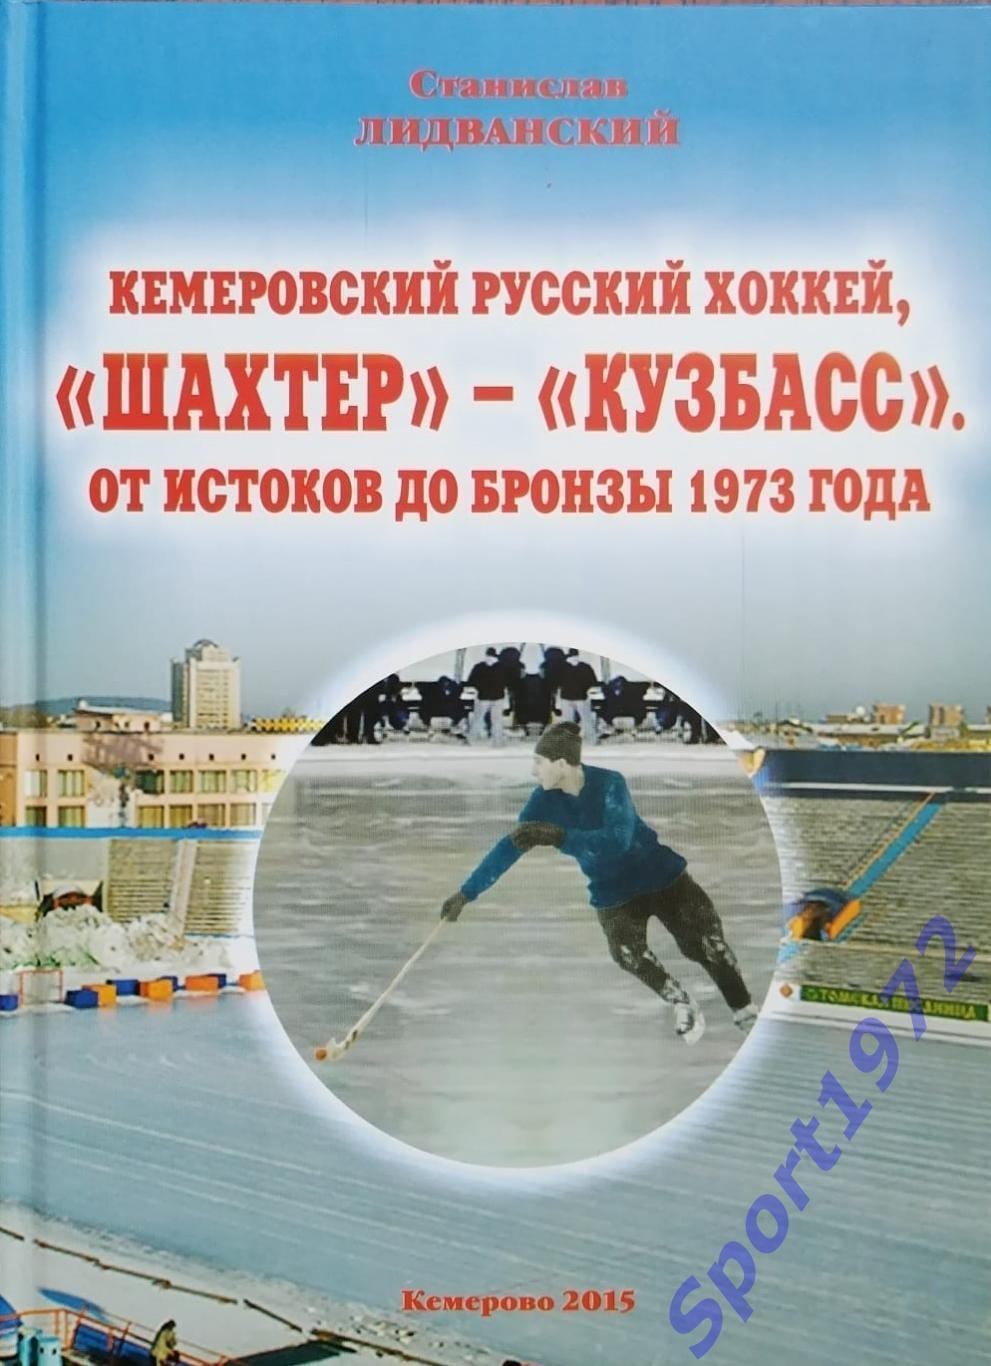 Кемеровский русский хоккей, Шахтёр - Кузбасс. От истоков до бронзы 1973 года.